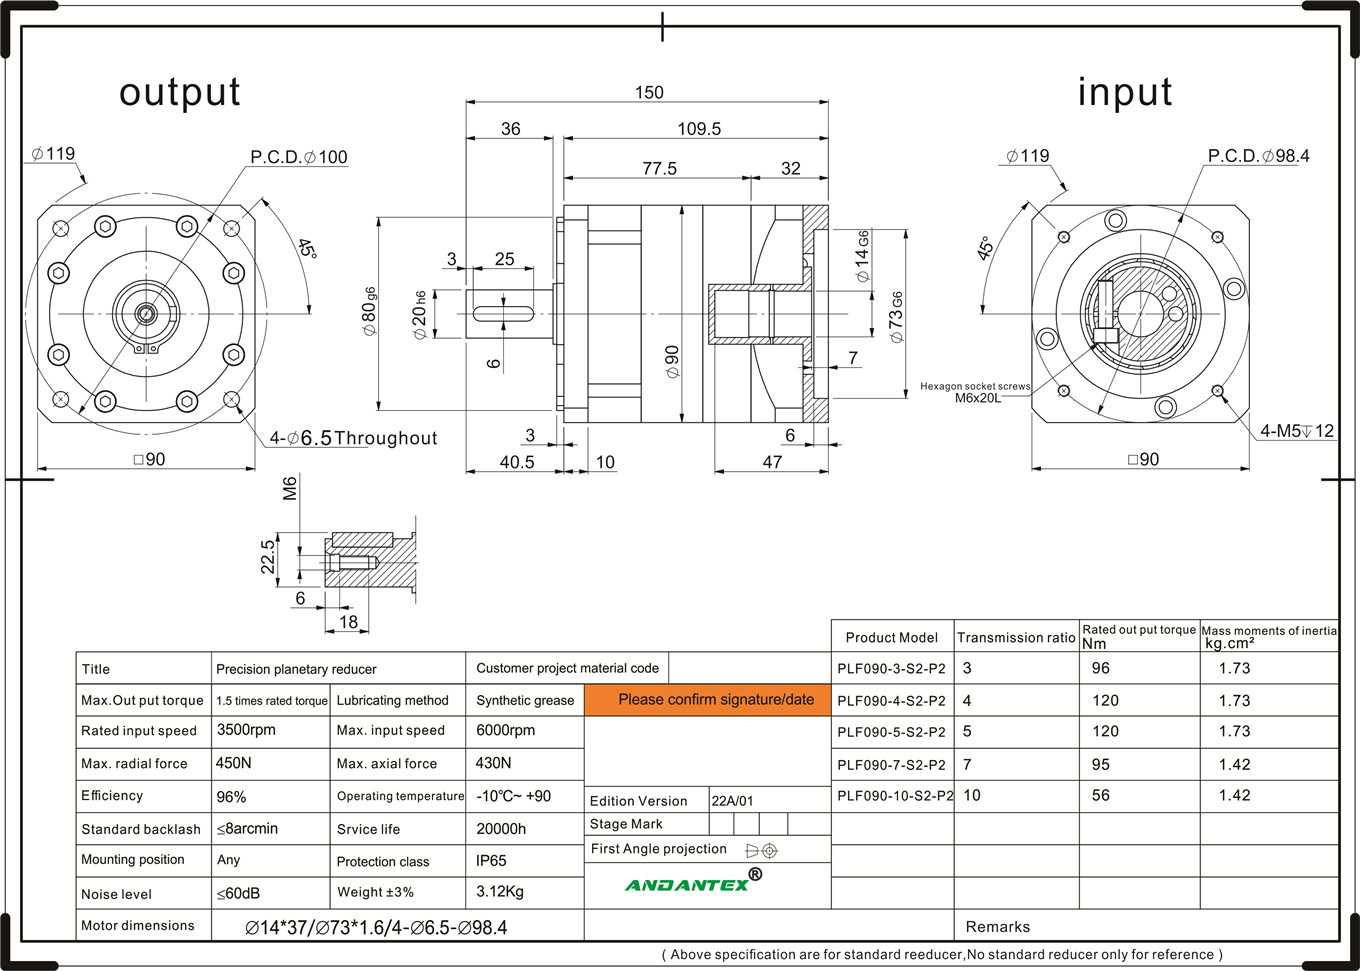 Andantex plf090-10-s2-p2 serie standard di riduttori planetari machini industriali in applicazioni di l'equipaggiu-01